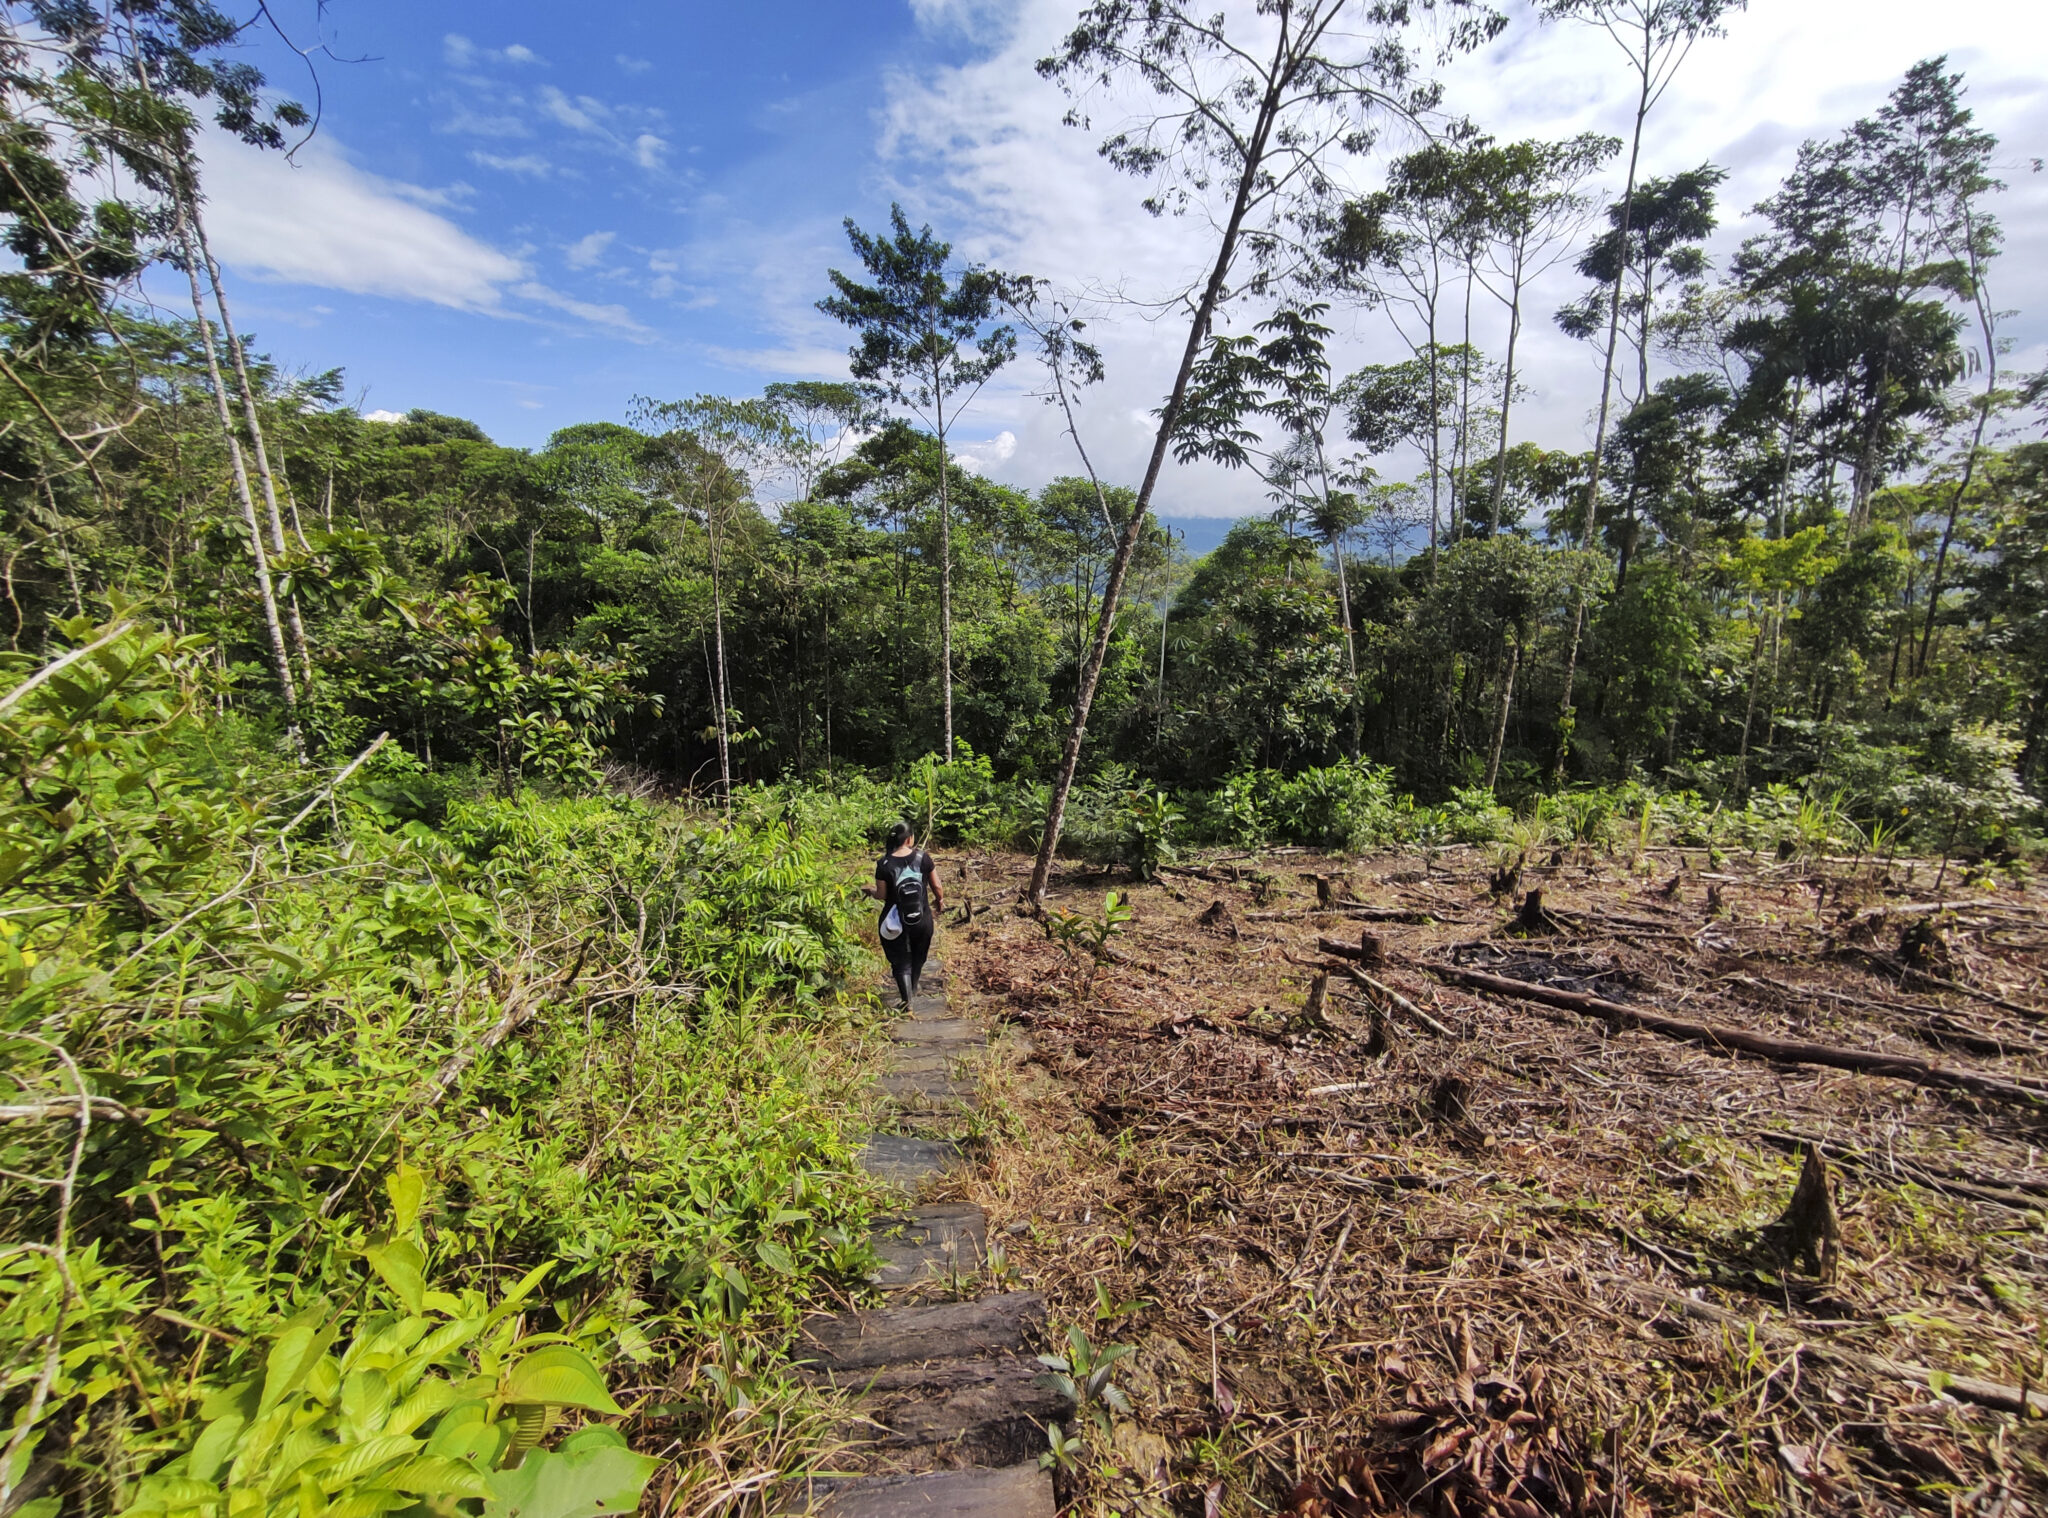 Una mujer atraviesa un pedazo de selva en la andinoamazonía colombiana, en el departamento de Putumayo. La selva talada en primer plano y, al fondo, todavía algunos árboles en pie. Foto: Natalia Pedraza Bravo.